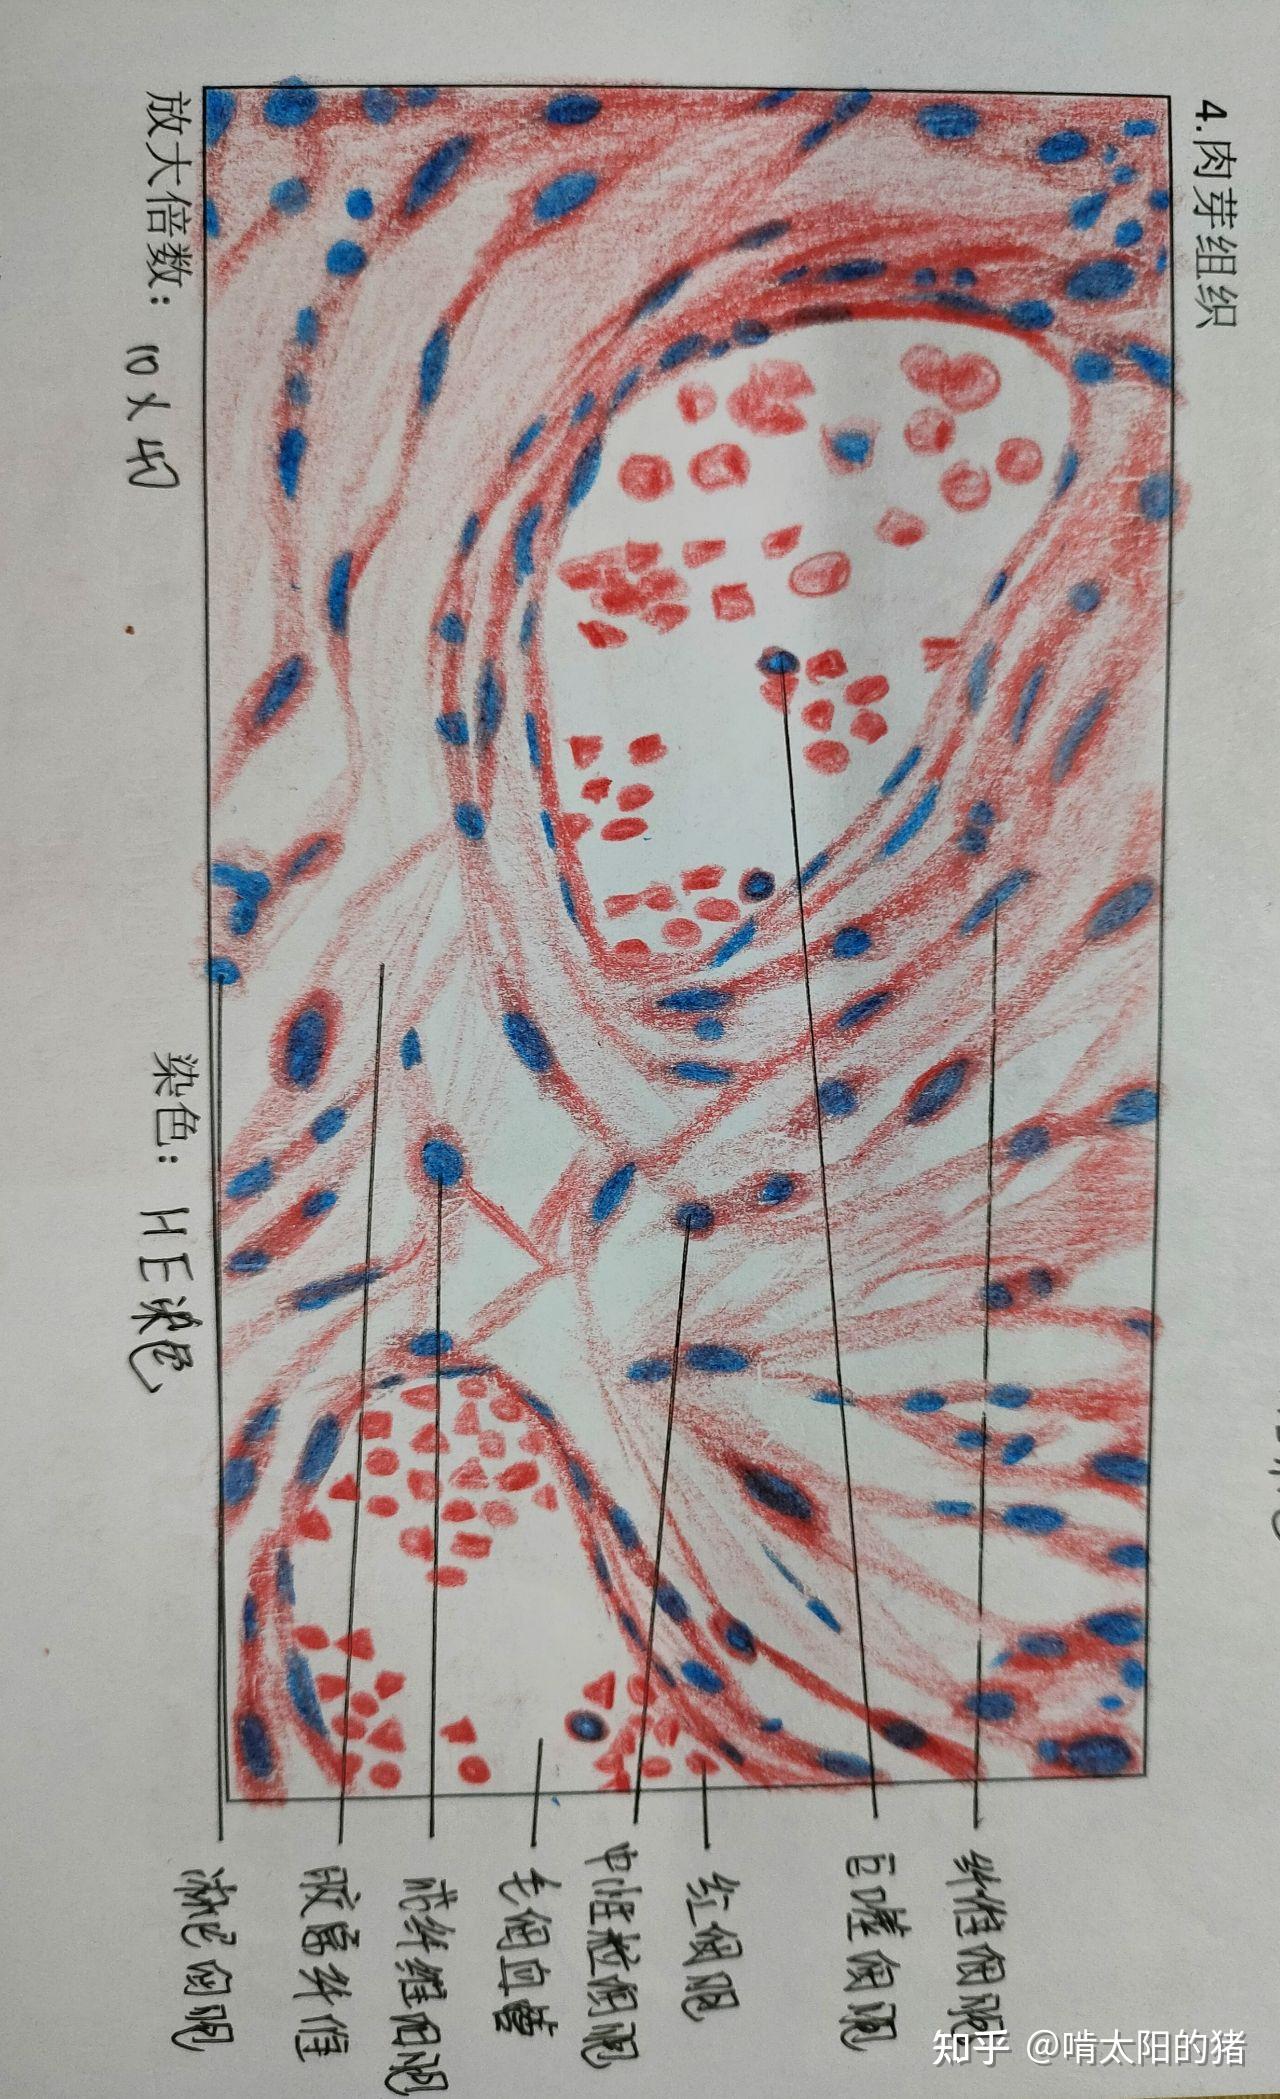 病理肉芽组织红蓝绘图图片